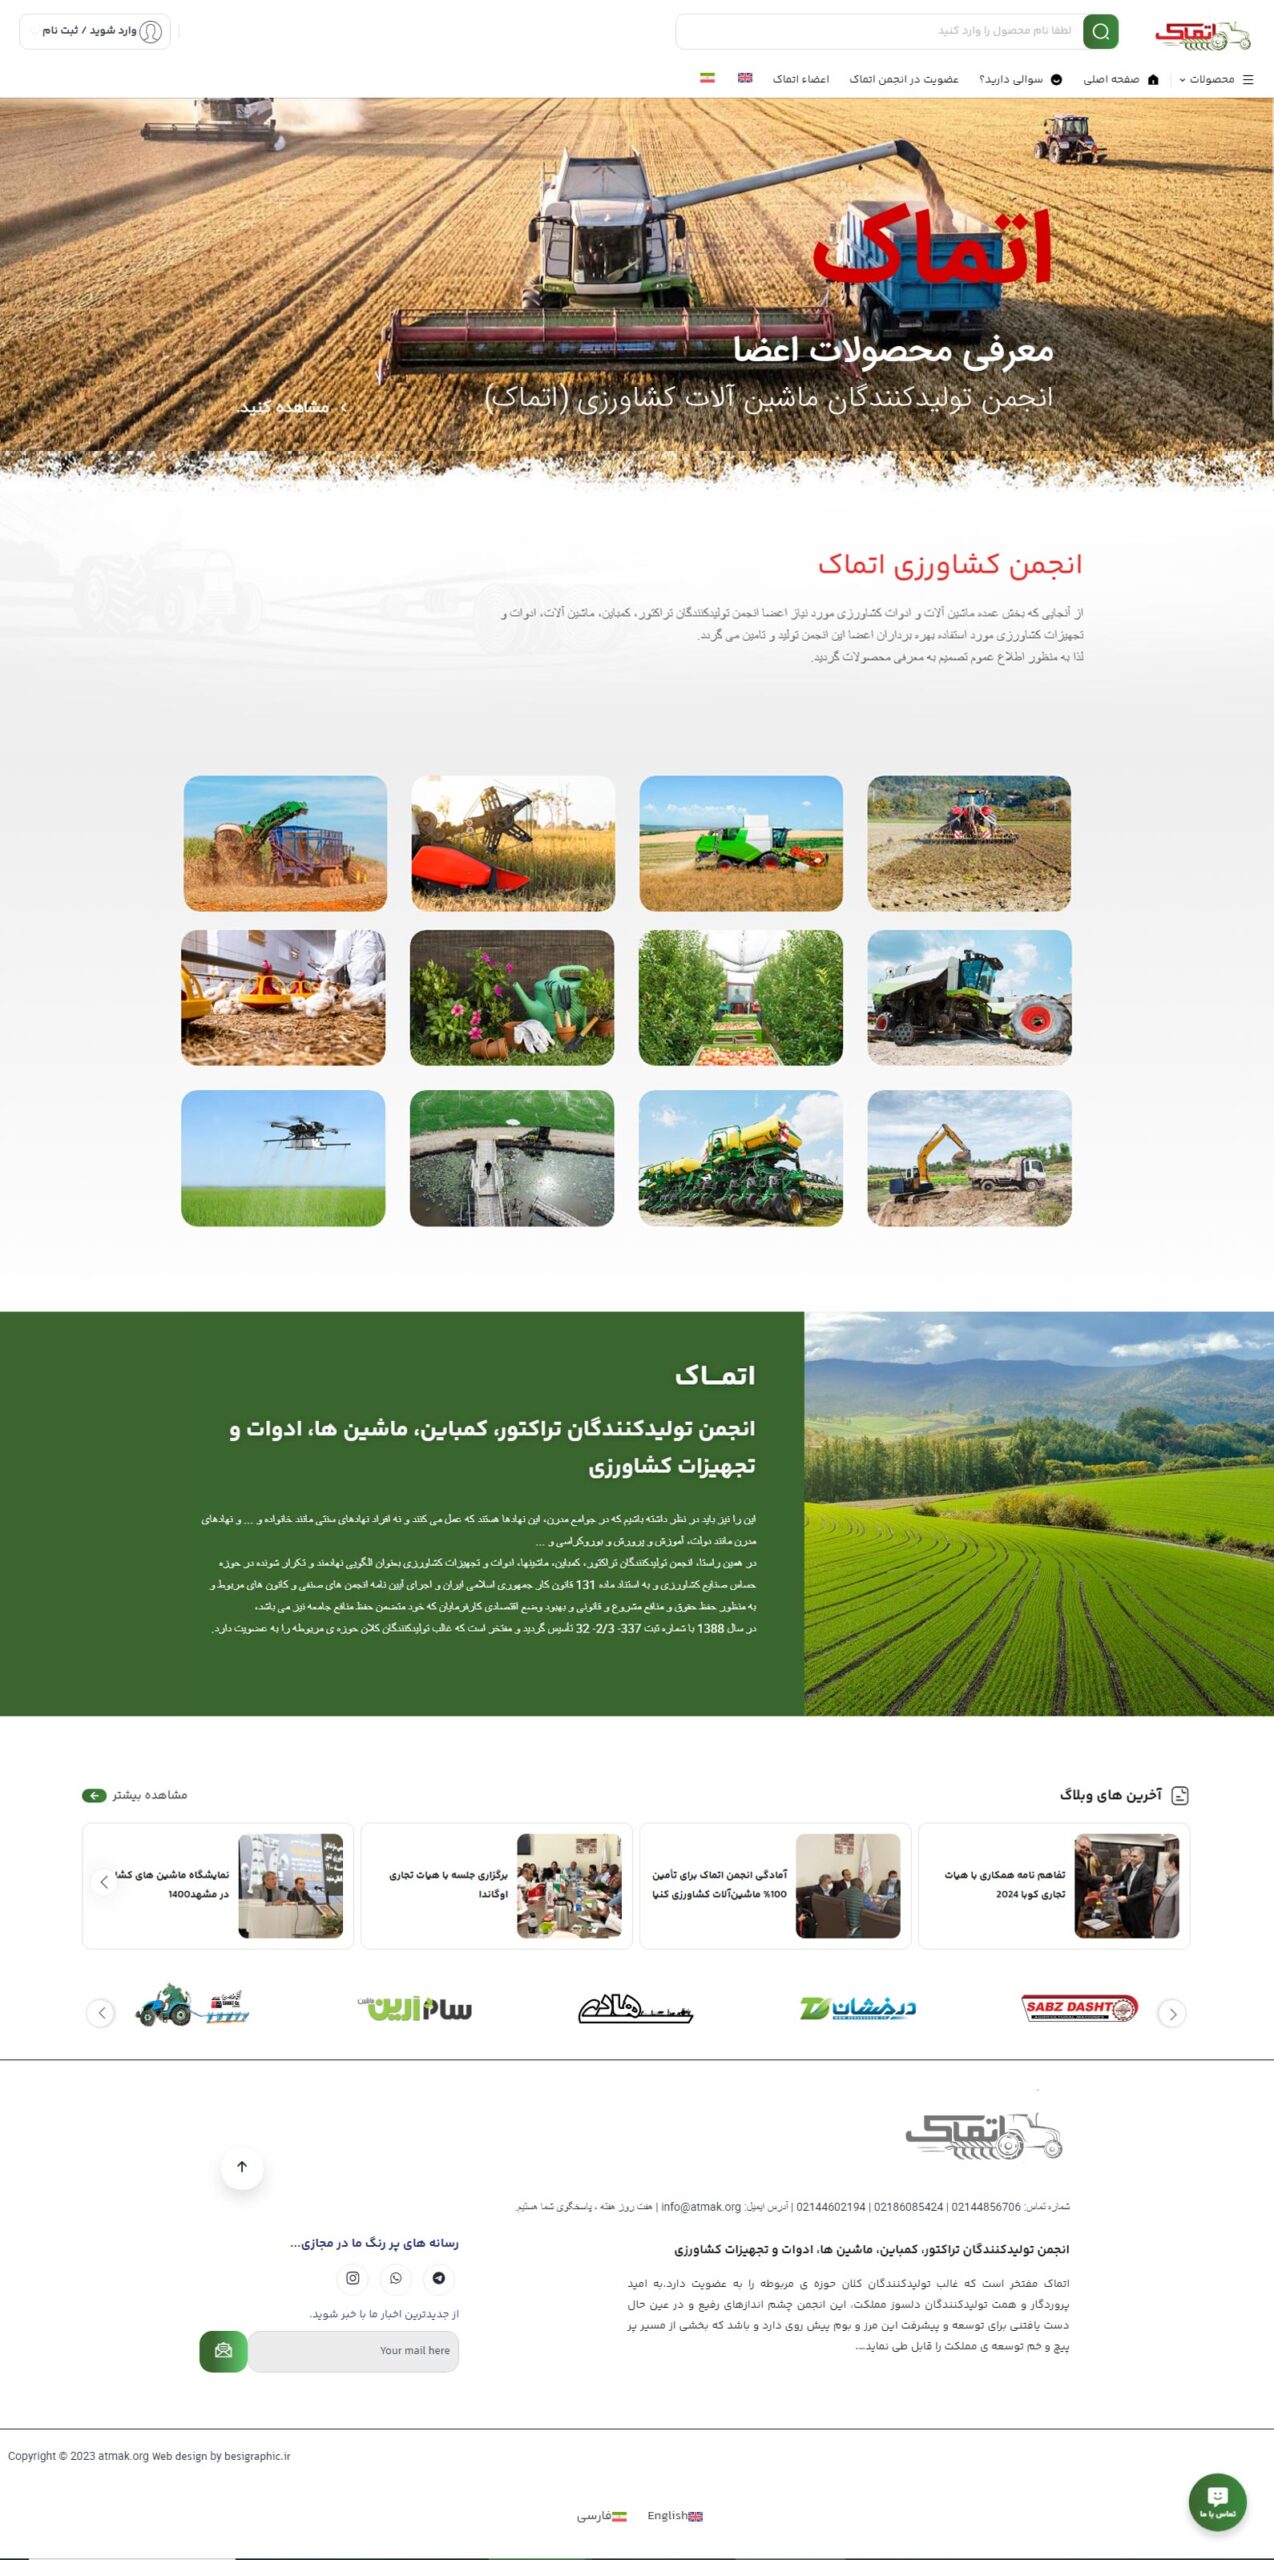 طراحی سایت فروشگاهی انجمن کشاورزی اتماک